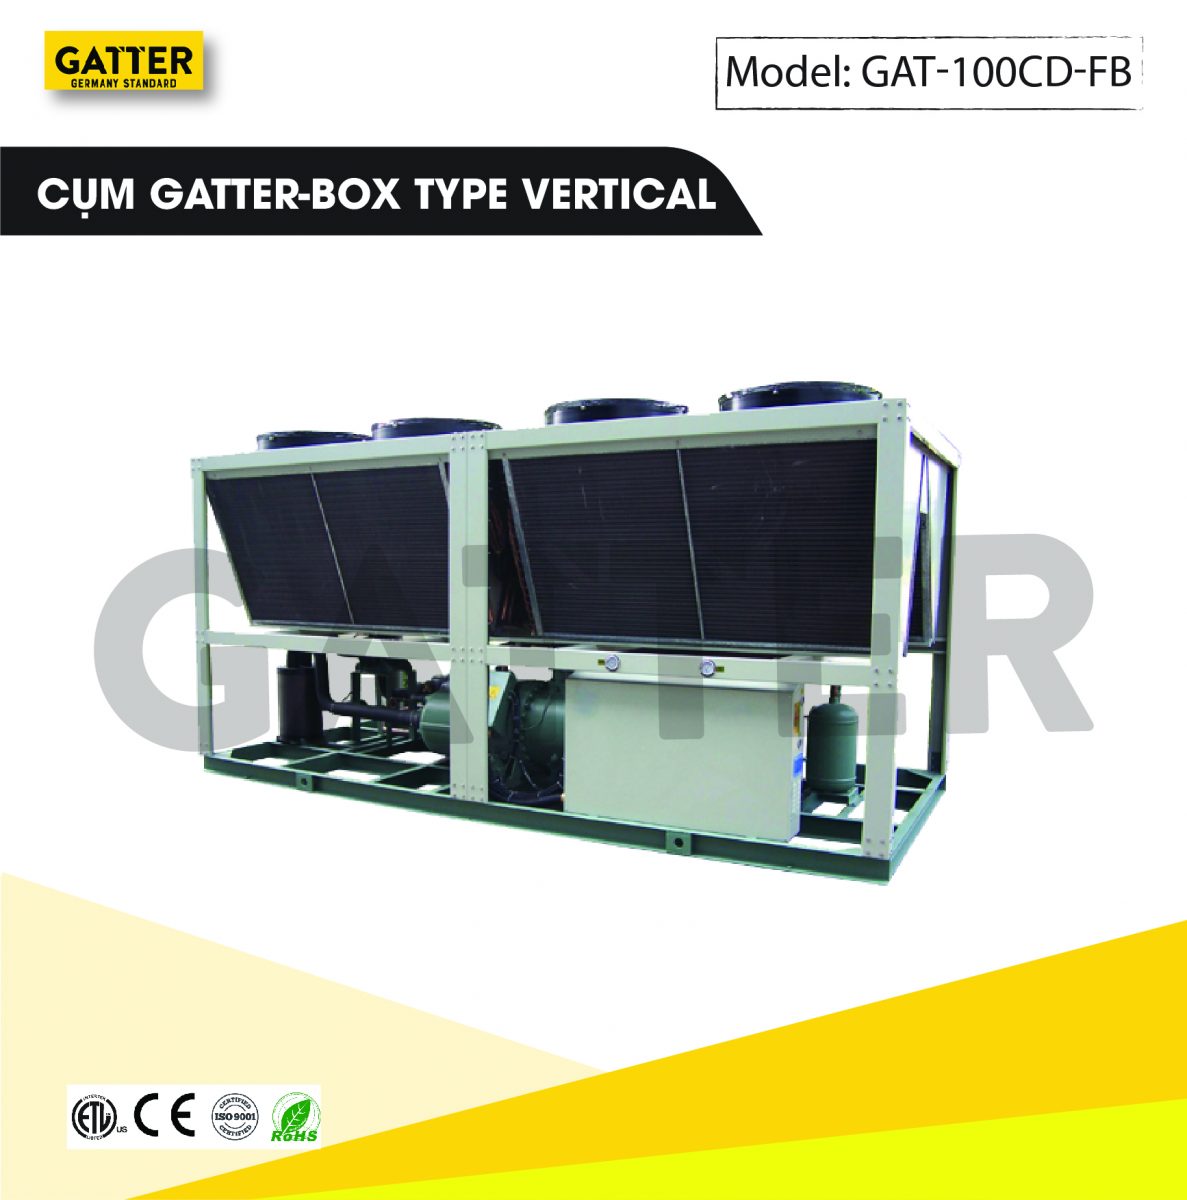 Cụm máy nén Gatter-box GAT-100CD-FB